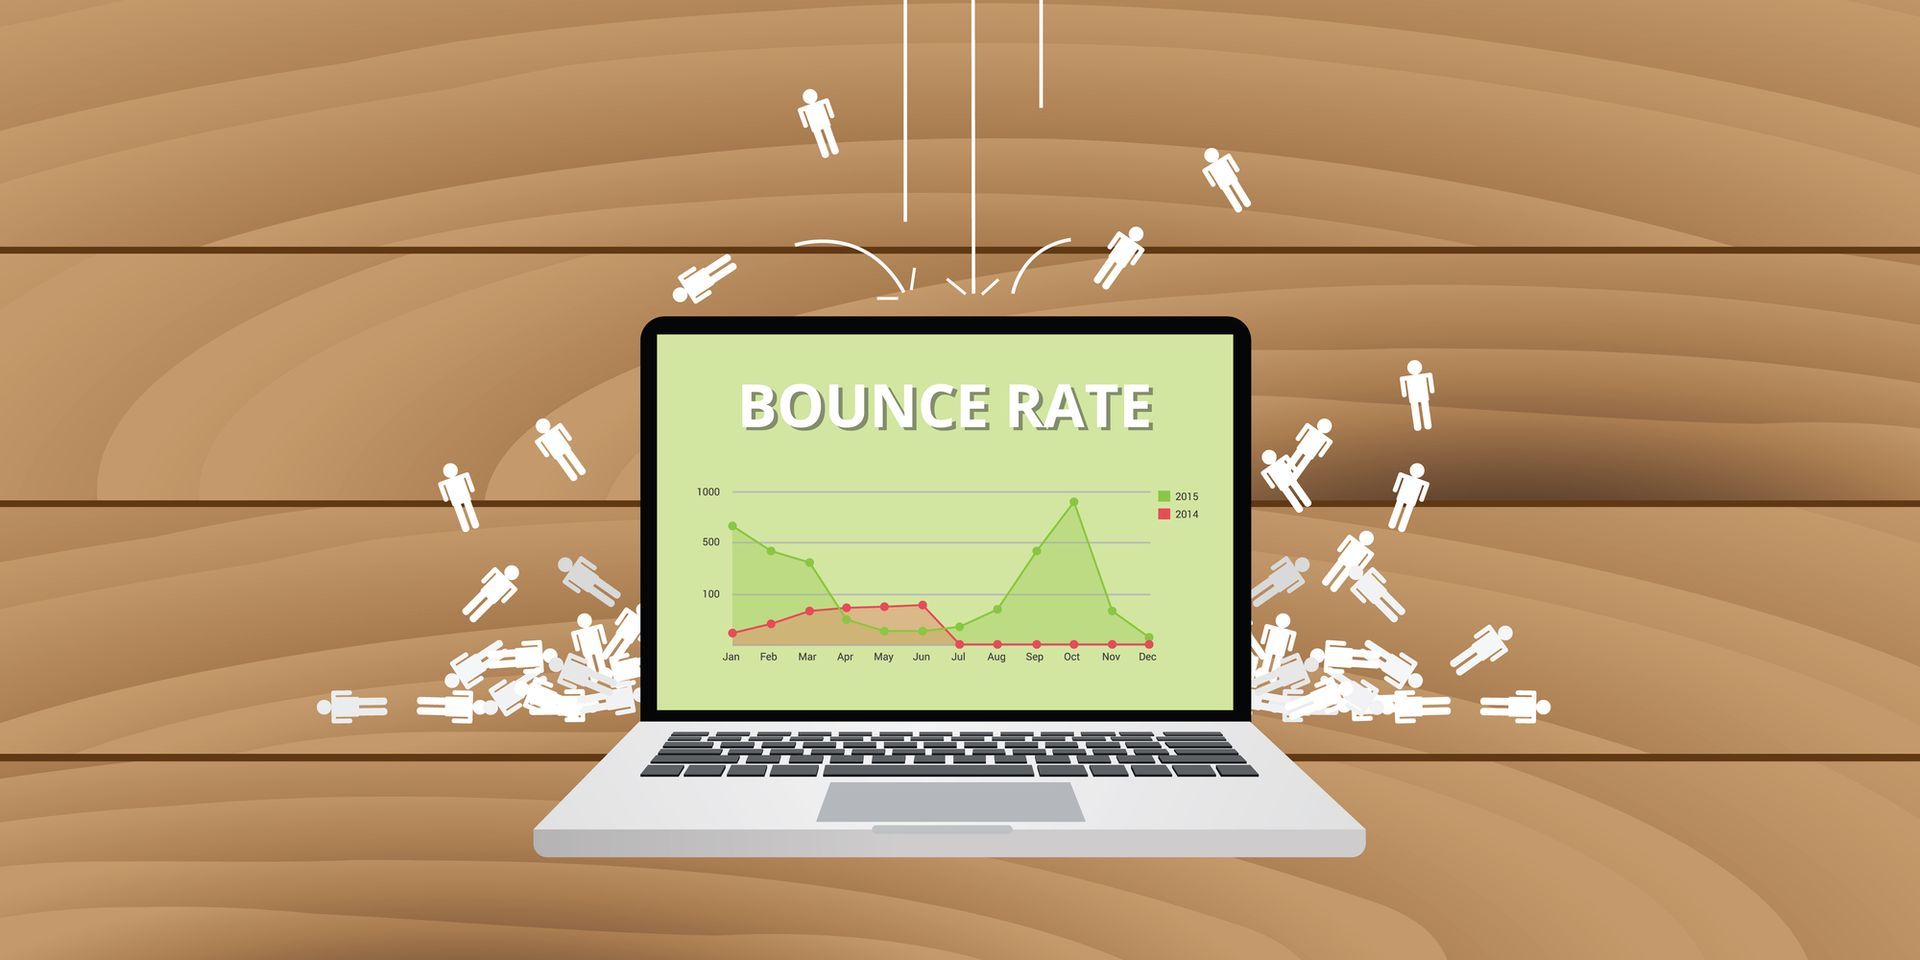 Illustratie van een laptop waarop het woord bounce rate te zien is en witte poppetjes die op de laptop vallen.